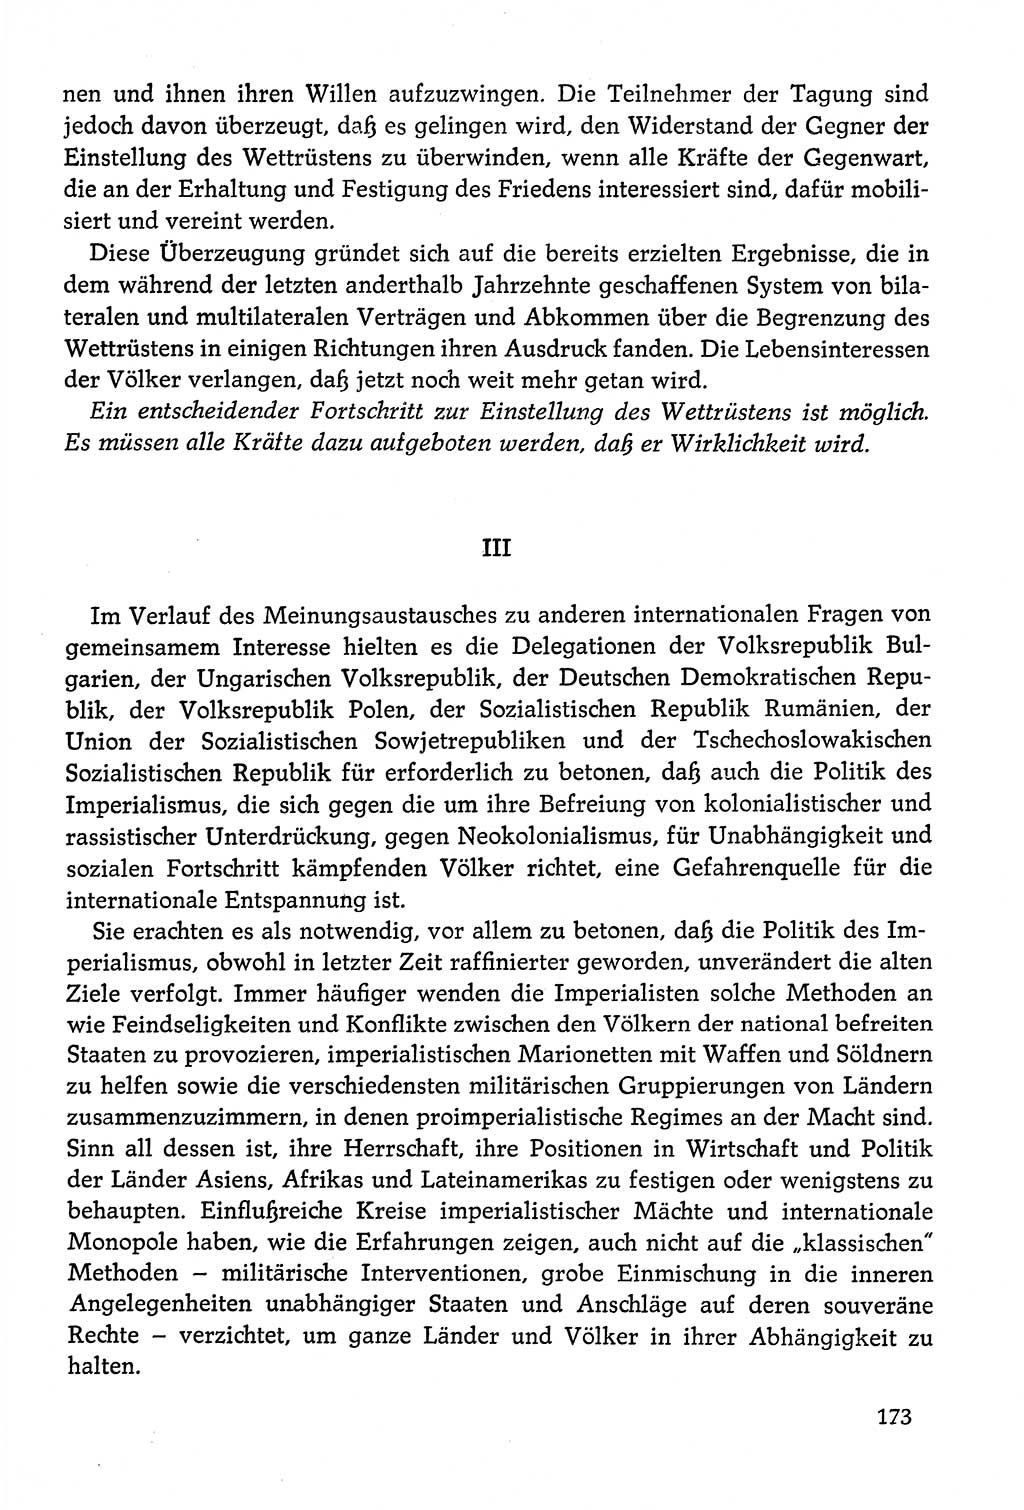 Dokumente der Sozialistischen Einheitspartei Deutschlands (SED) [Deutsche Demokratische Republik (DDR)] 1978-1979, Seite 173 (Dok. SED DDR 1978-1979, S. 173)